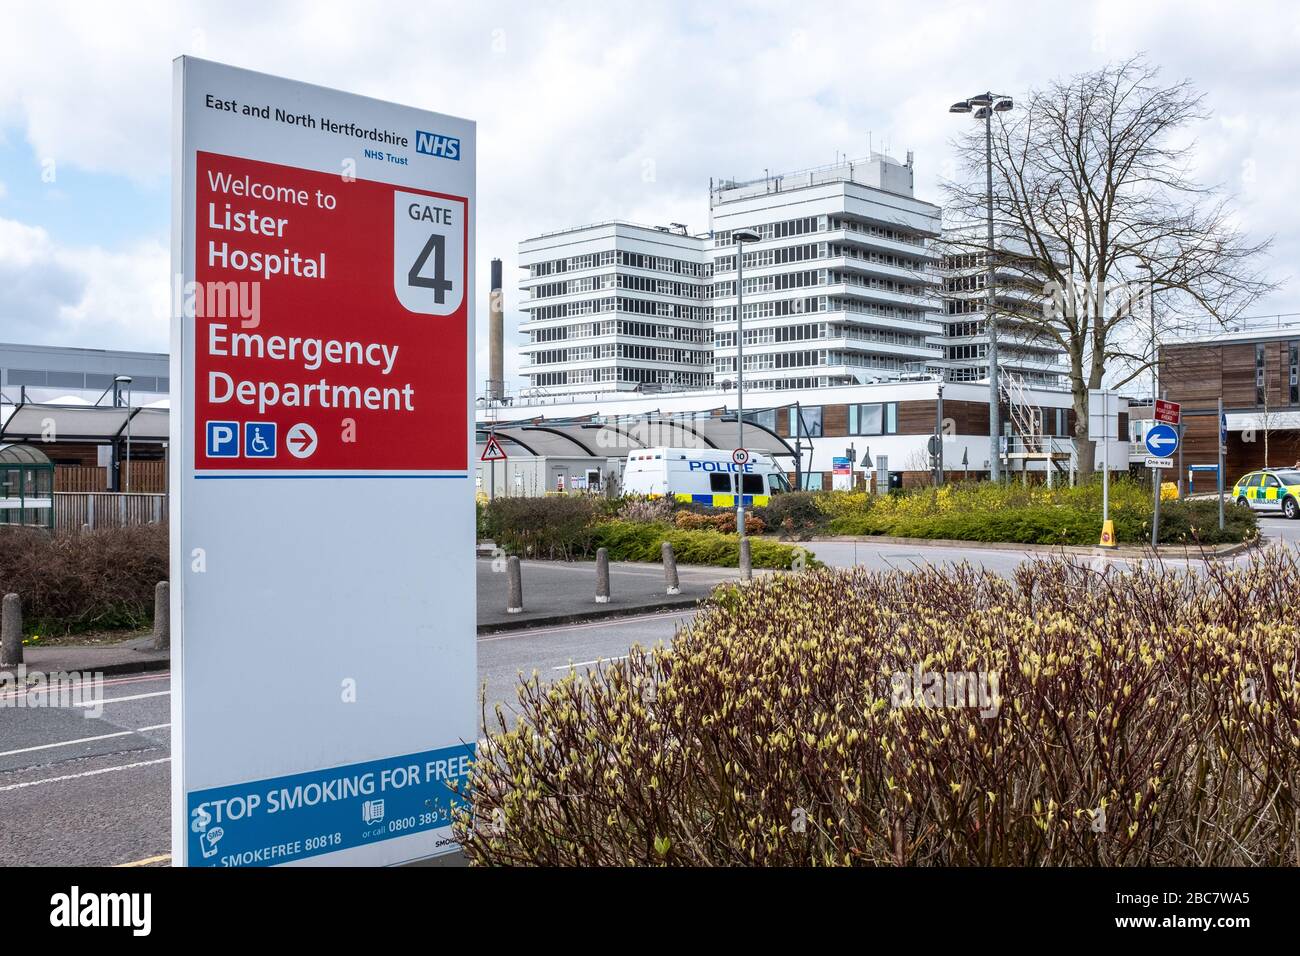 Lister Hospital, East and North Herts NHS Trust, Stevenage, Hertfordshire UK. Einfahrt nach einem Unfall und einem Notfall ( A und E ) ( er ). Stockfoto